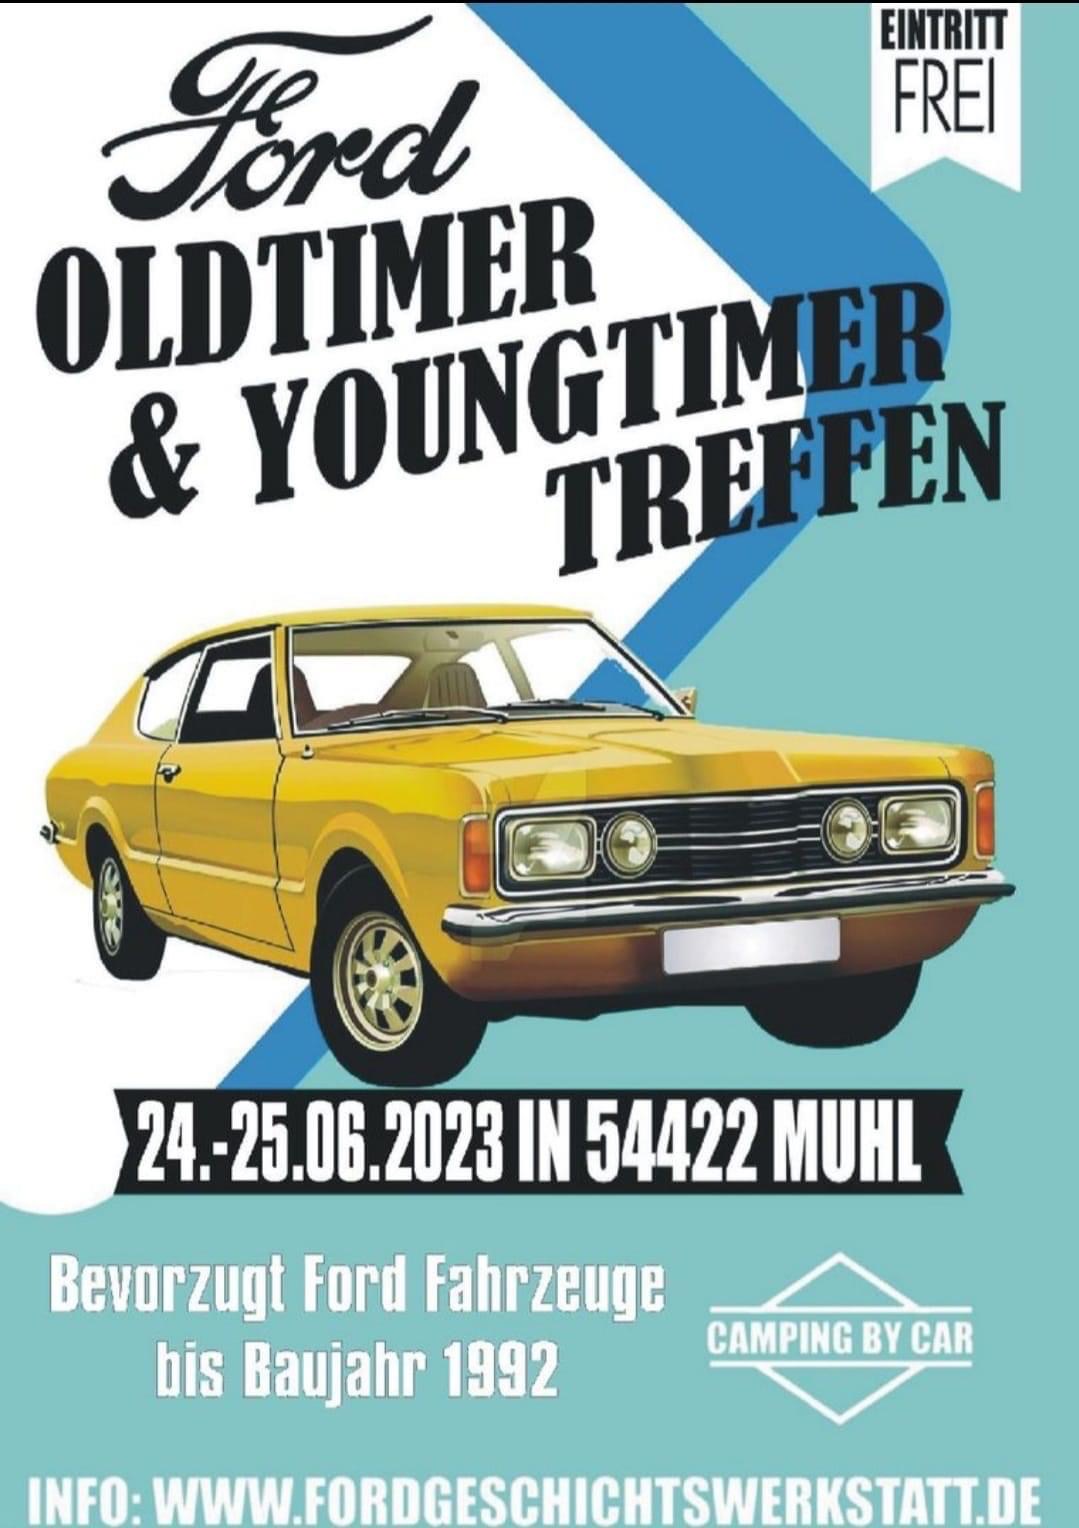 Ford Oldtimer & Youngtimer Treffen in Muhl